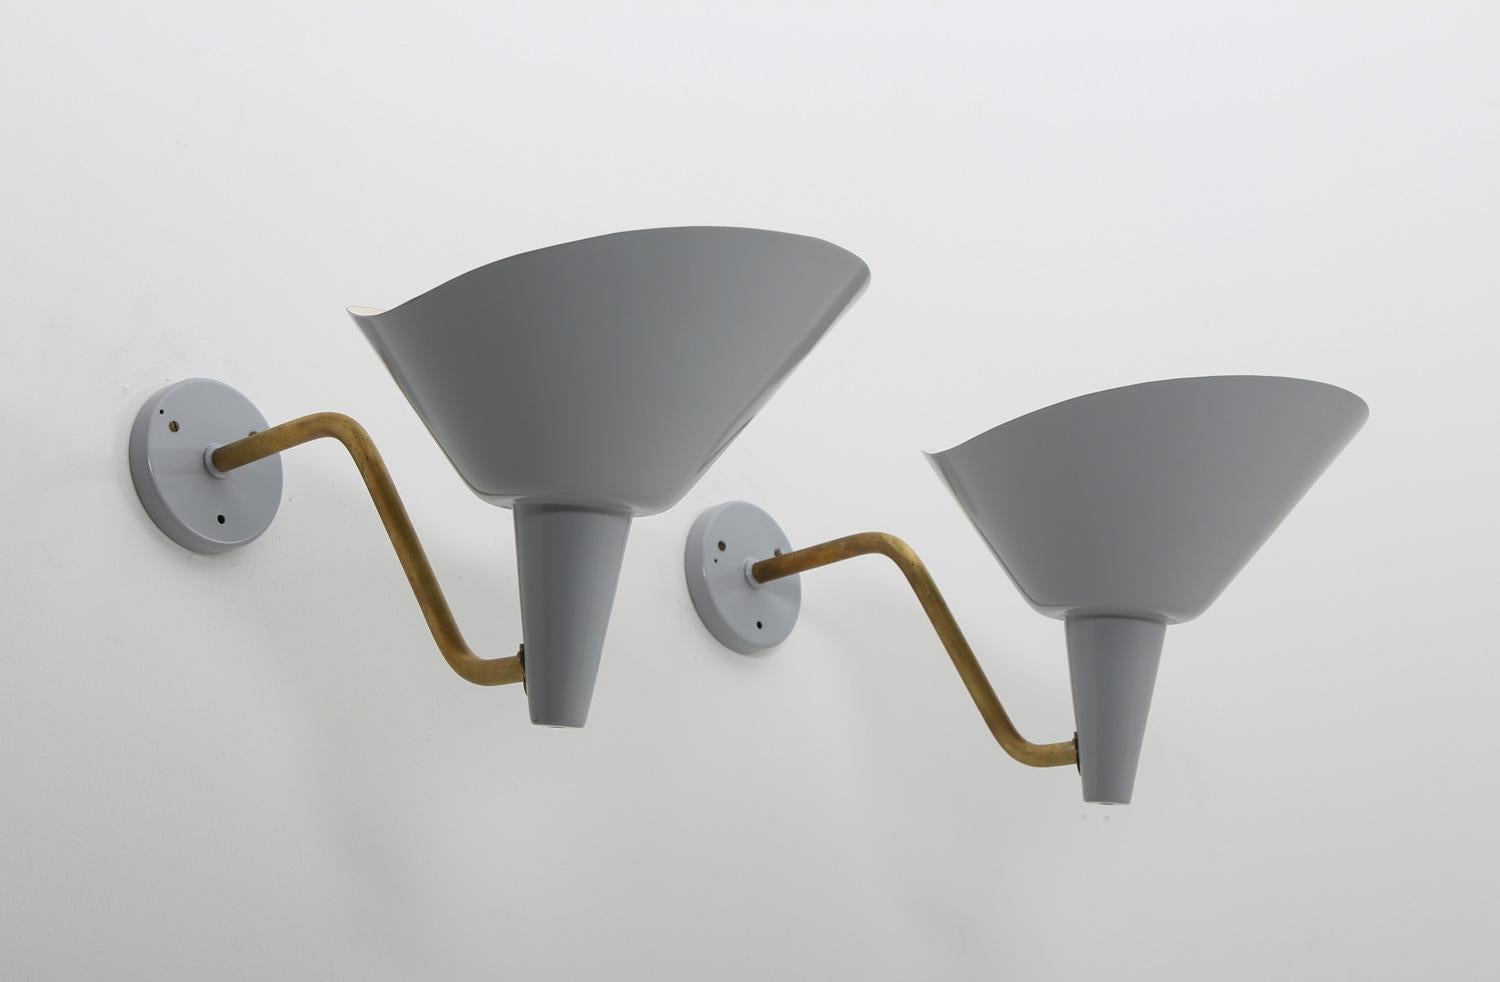 Seltene Wandlampen von Hans Bergström für Ateljé Lyktan, Schweden.
Diese Lampen sind großartige Beispiele für das beeindruckende Design, das die schwedische Beleuchtung in den 1930er-1940er Jahren kennzeichnete. Mit diesen erstaunlichen